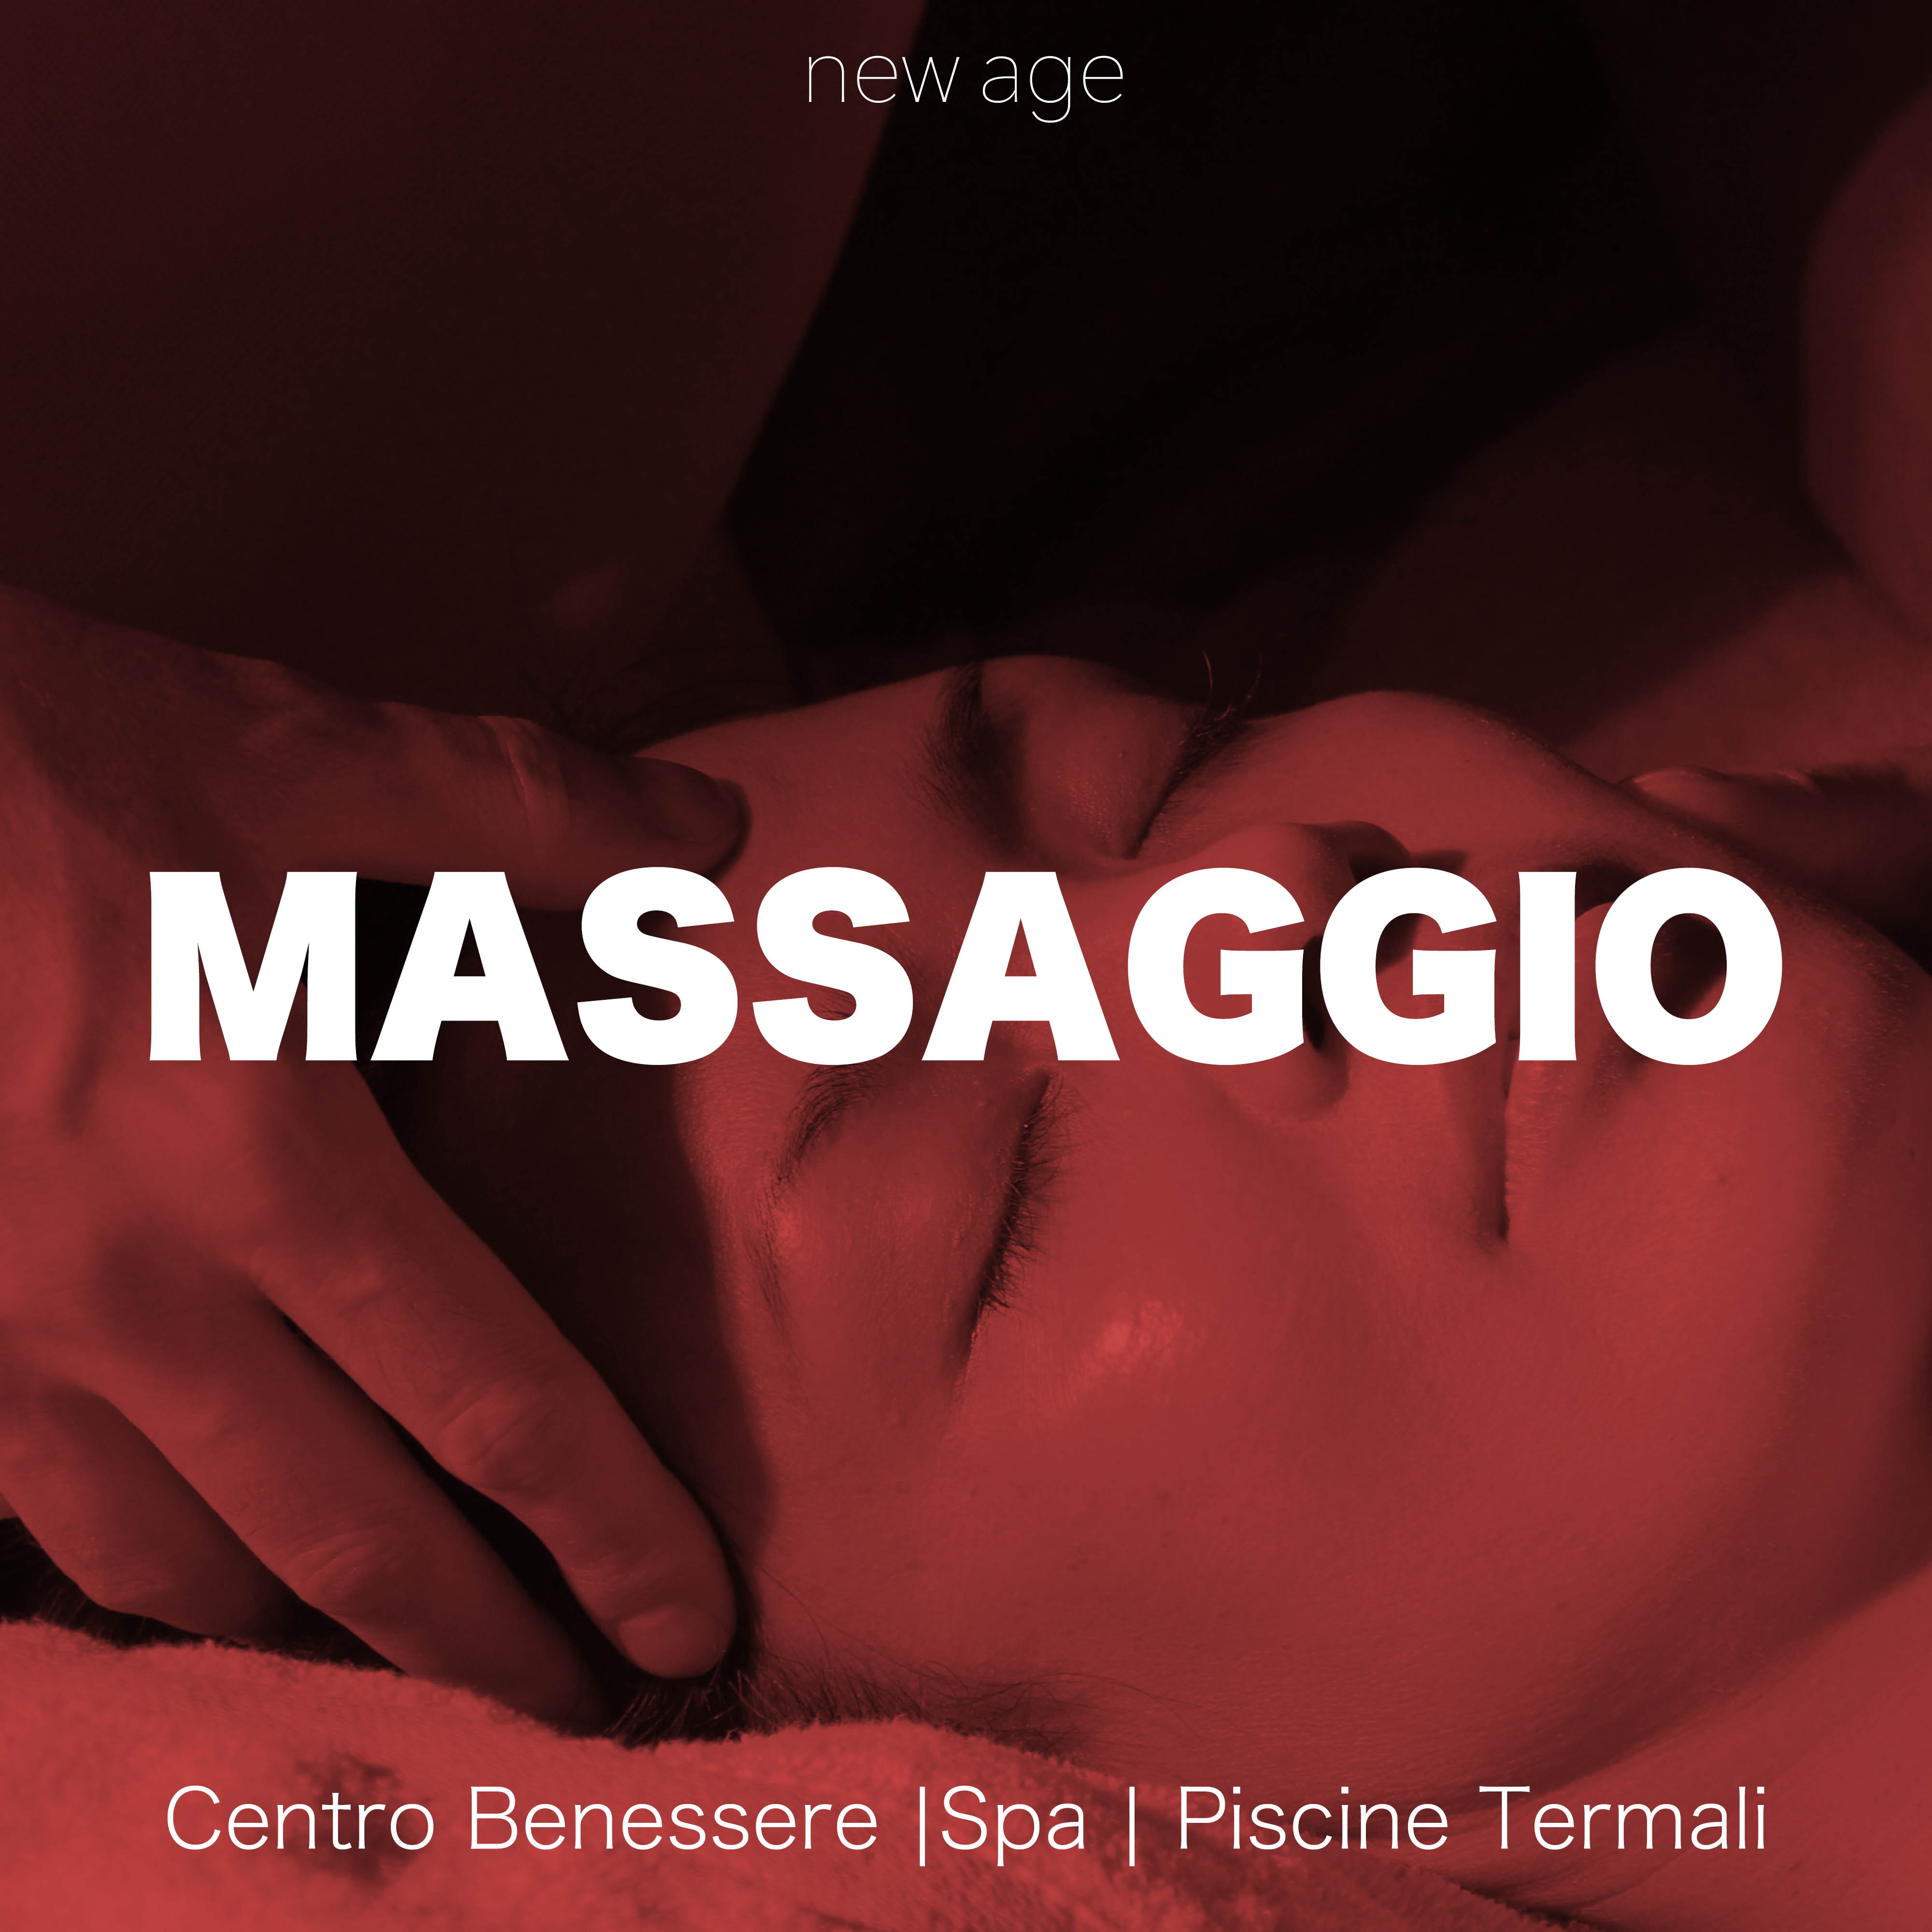 Massaggio: Musica Strumentale New Age per Massaggi, Centro Benessere, Spa e Piscine Termali